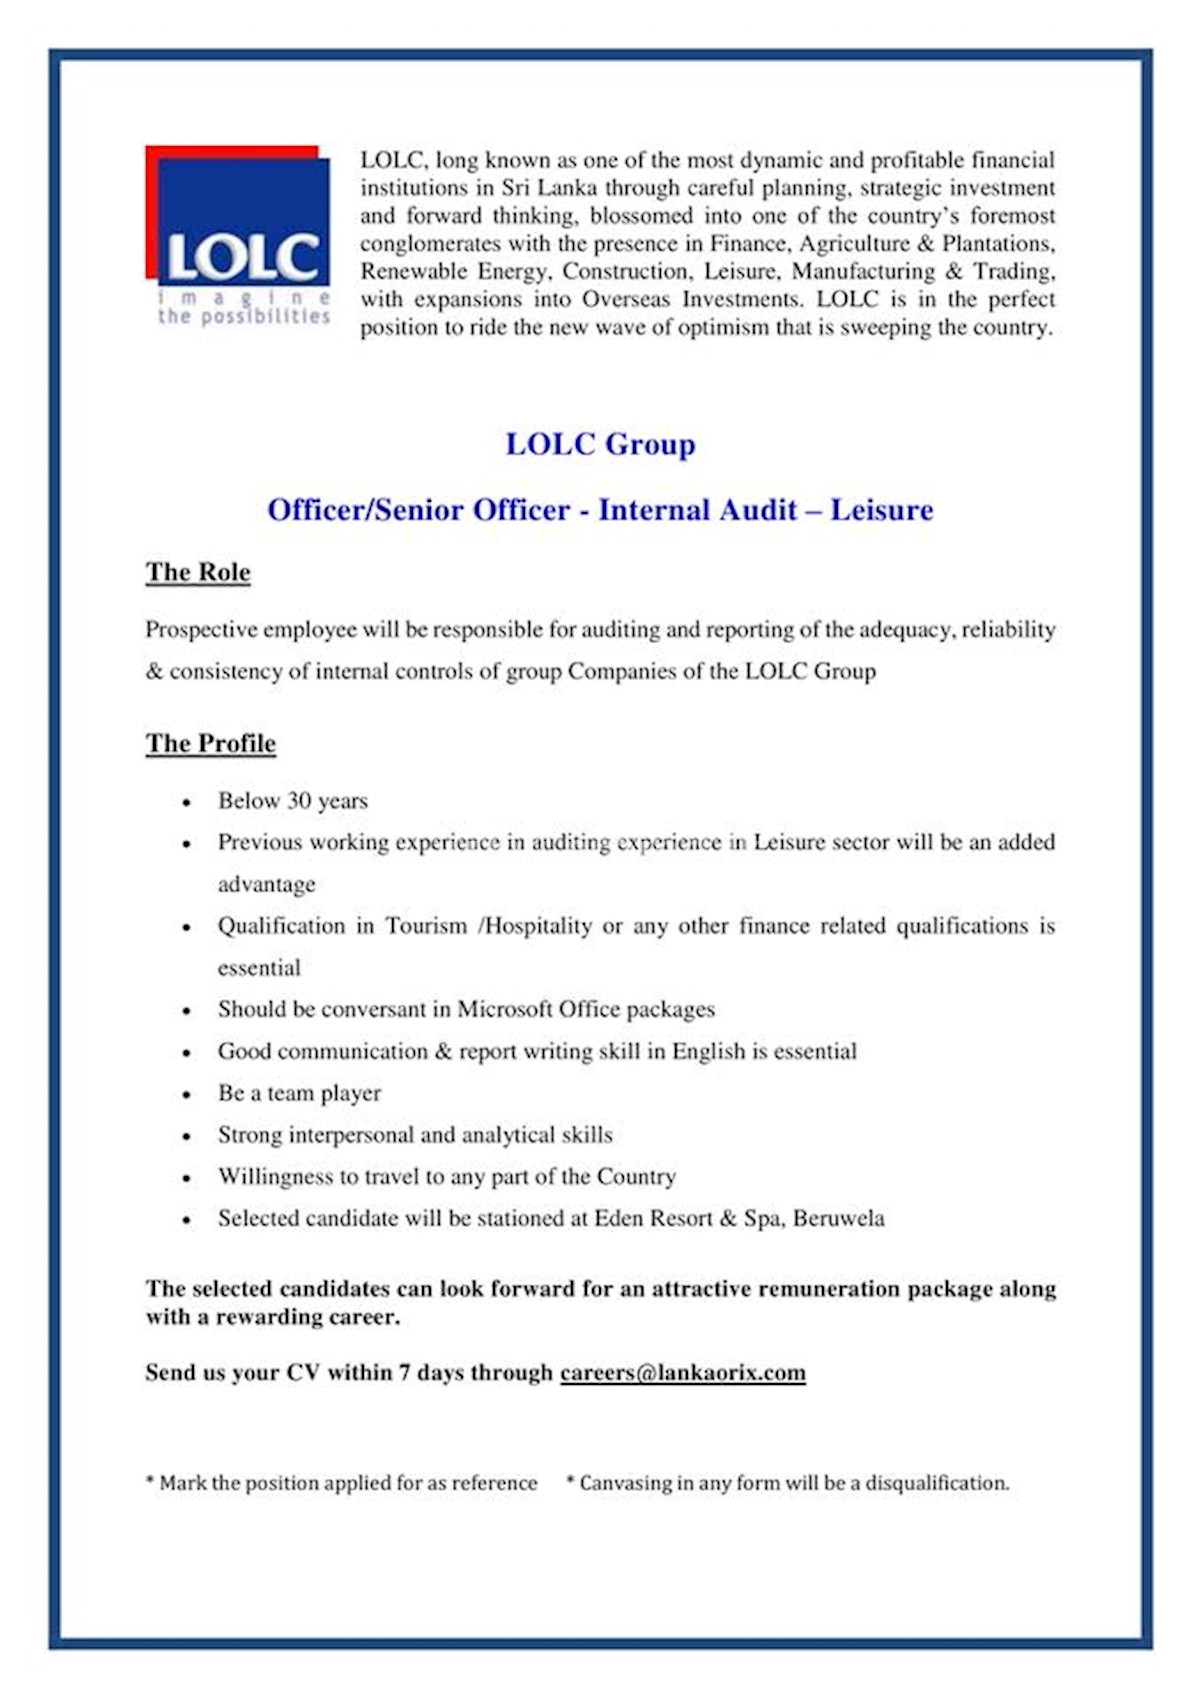 Officer/Senior Officer - Internal Audit - Leisure